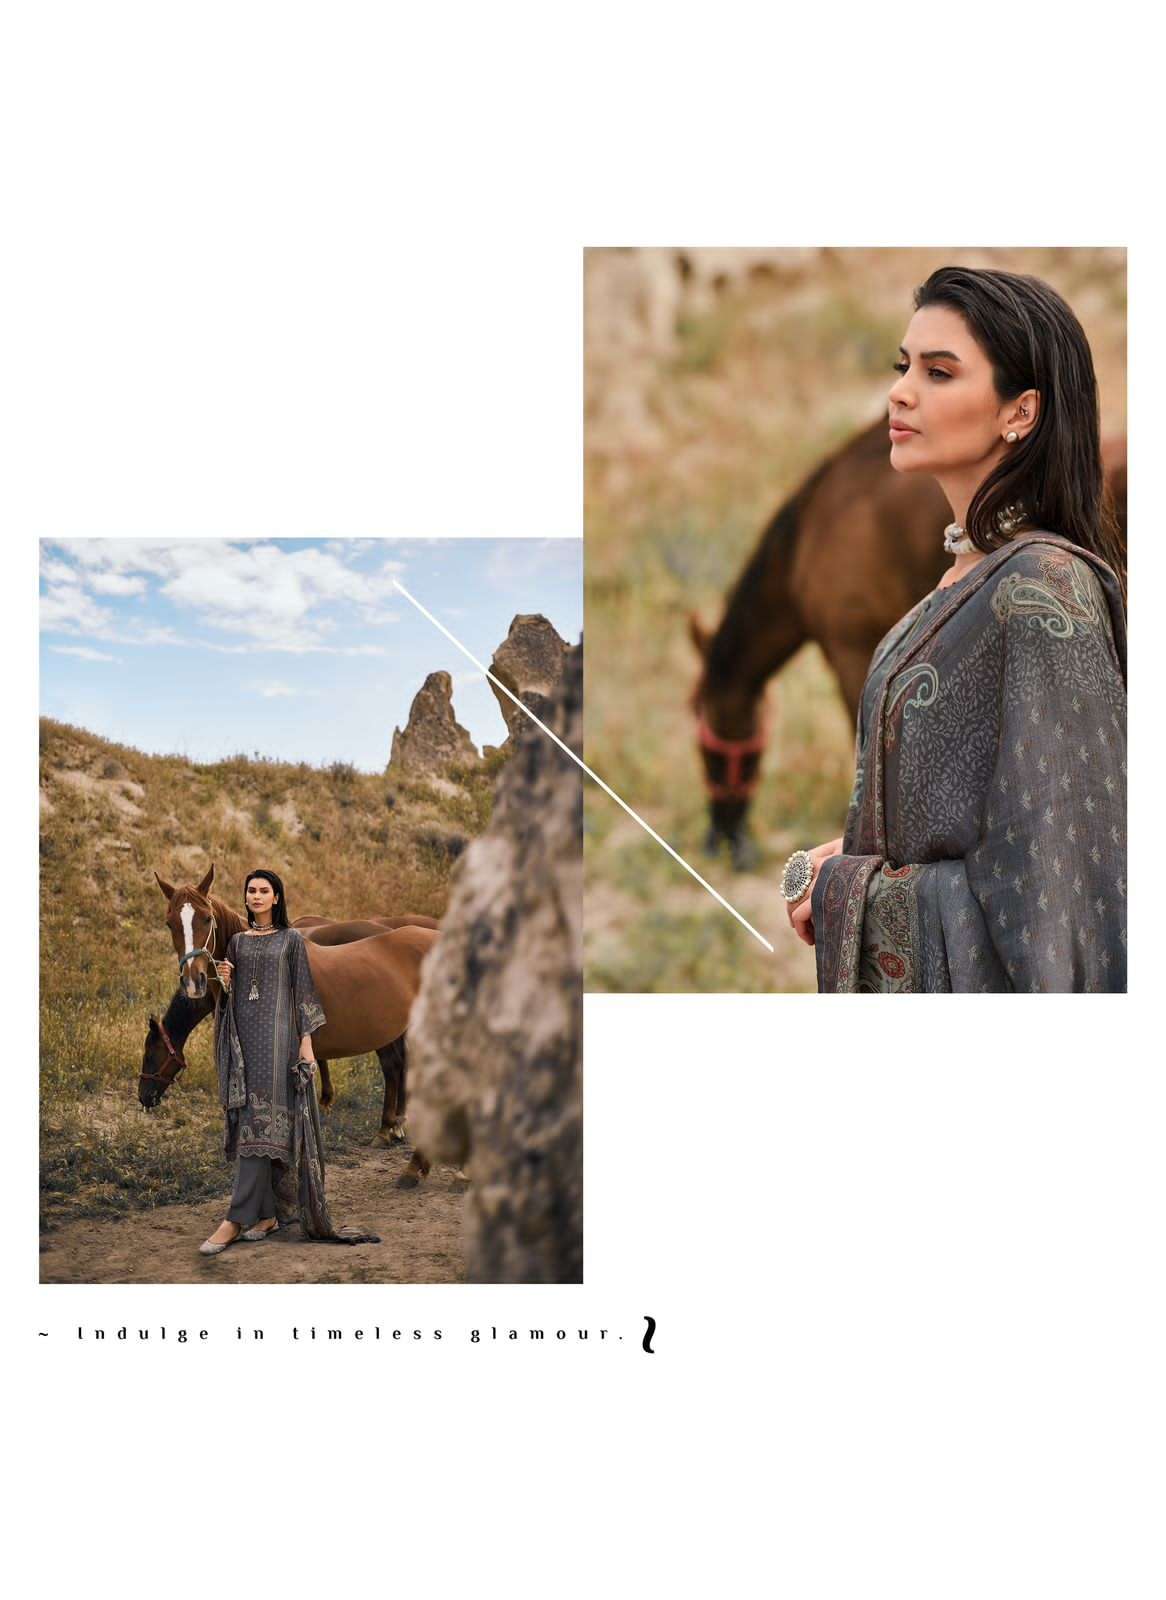 varsha fashion enchant stylish designer salwar kameez catalogue wholesale surat 